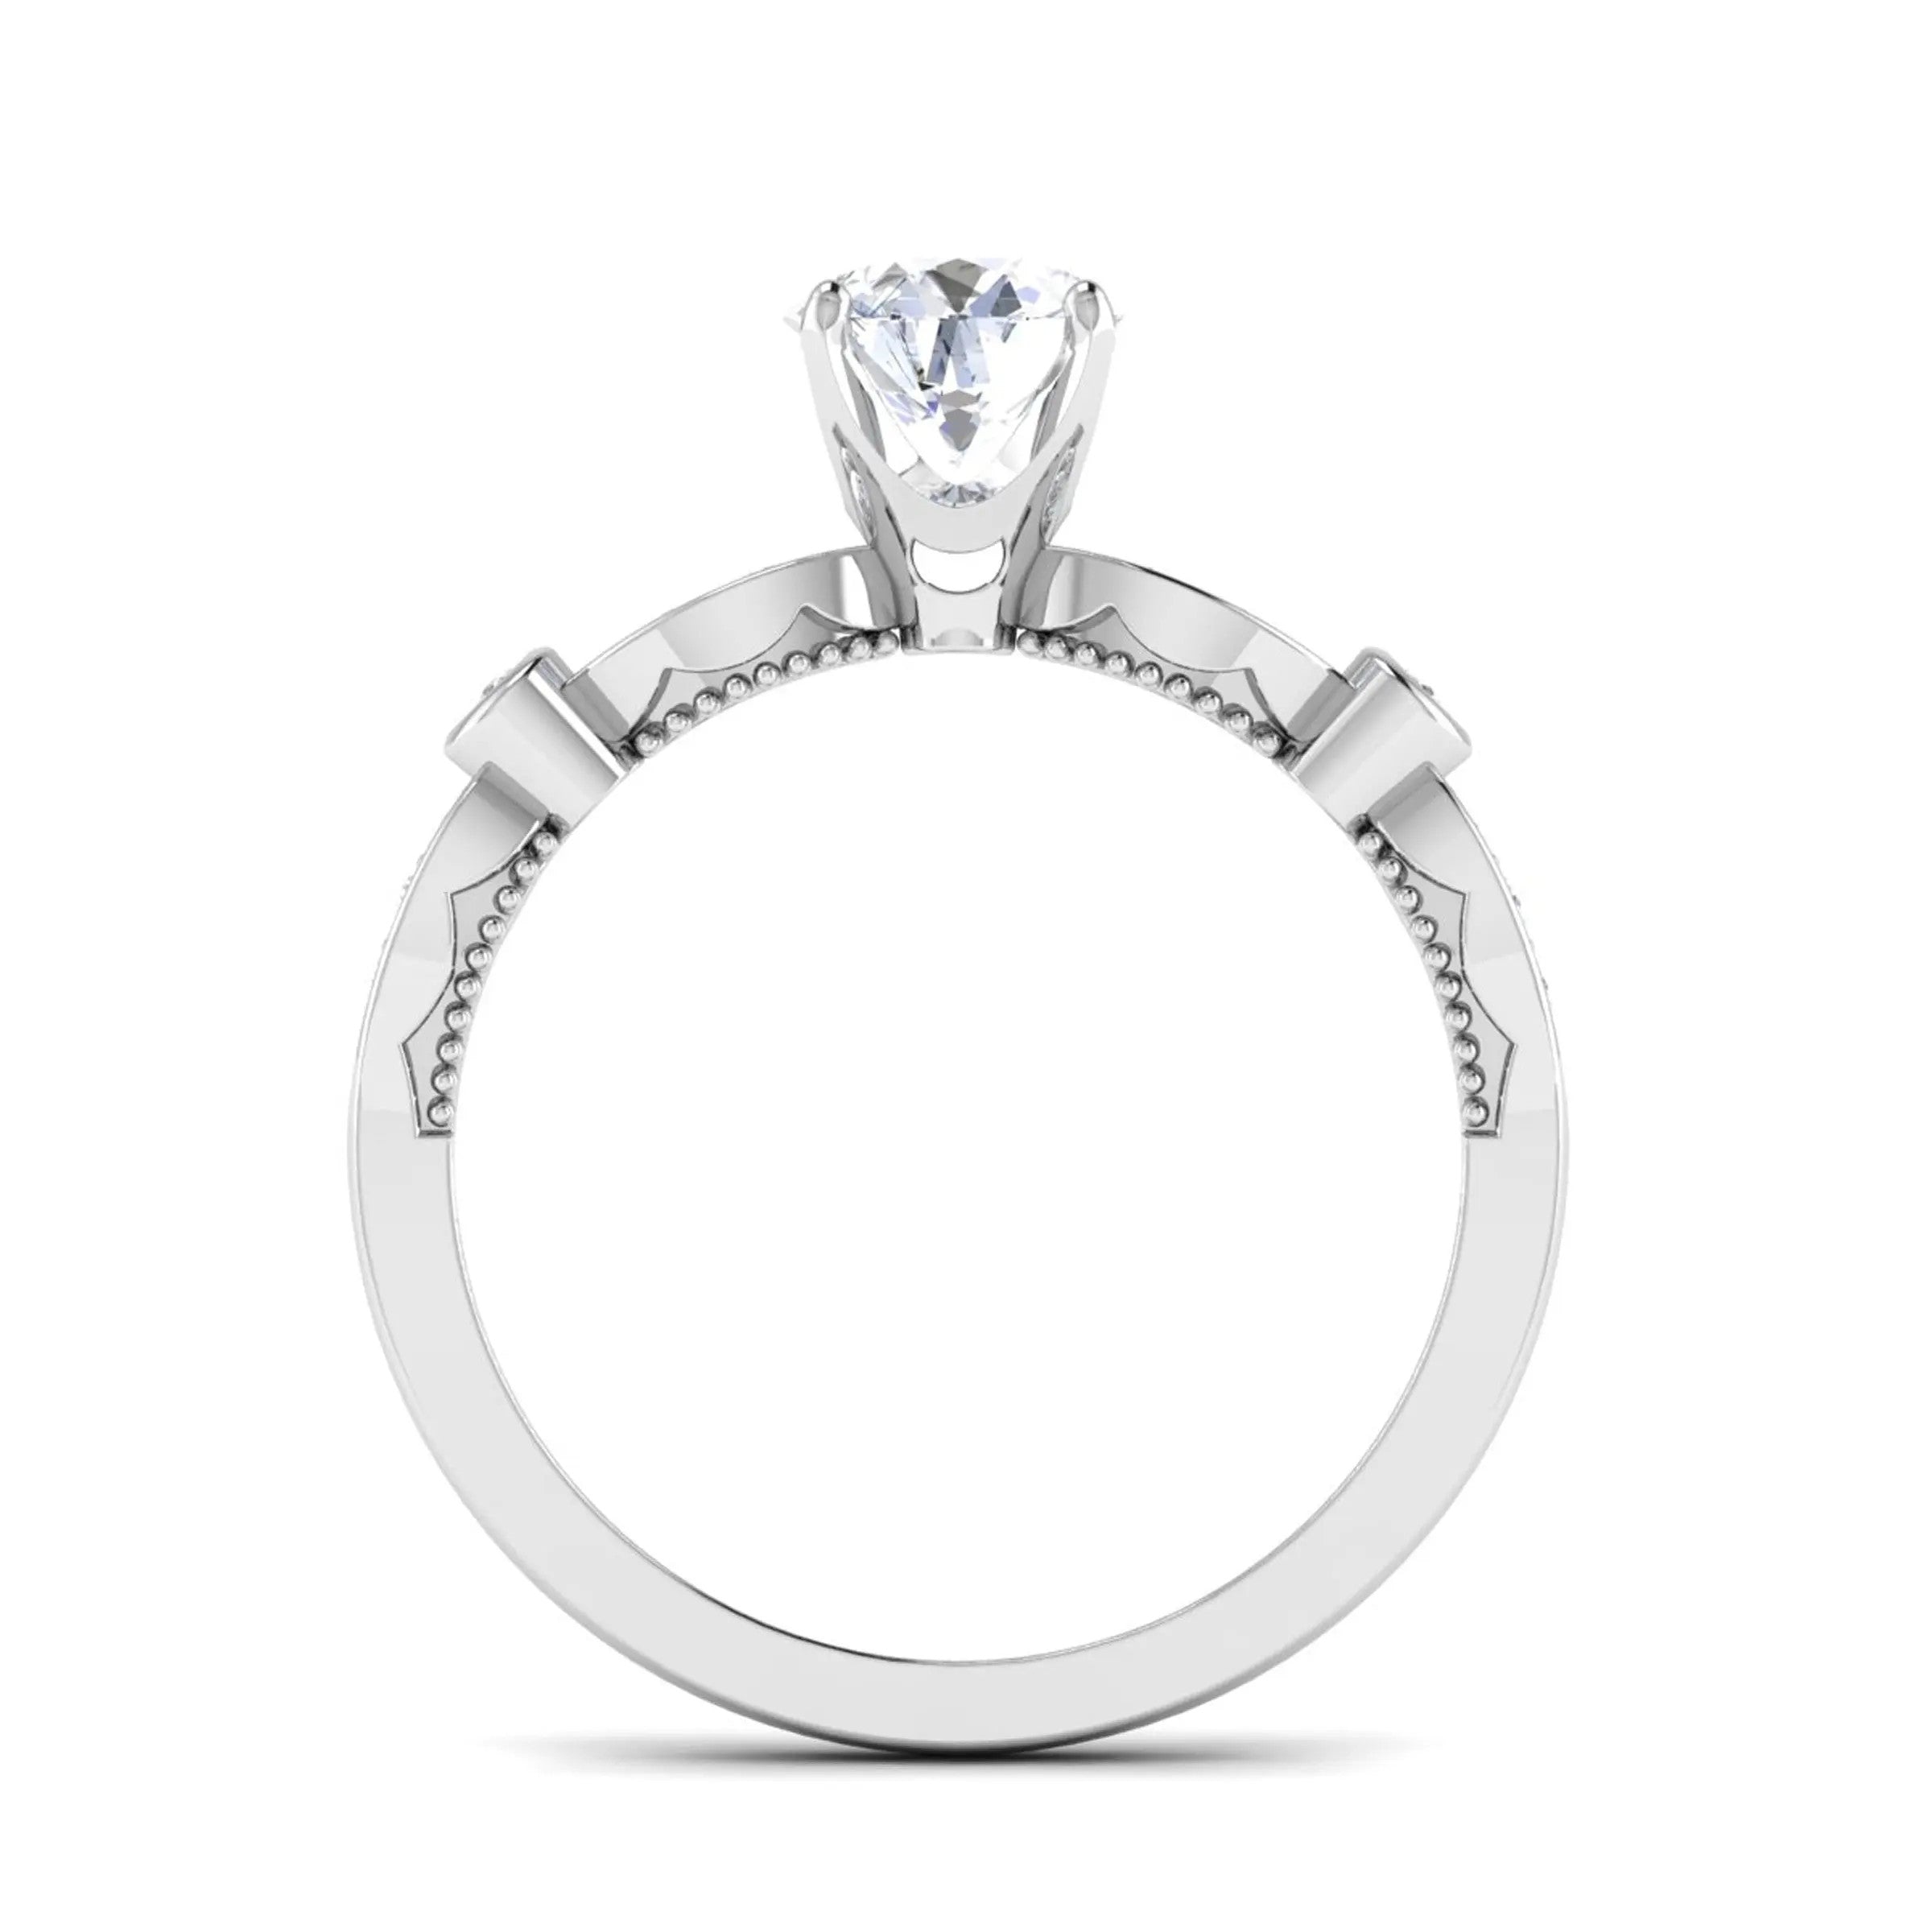 2-Carat Lab Grown Solitaire Diamond Accents Platinum Engagement Ring JL PT LG G 6581-D